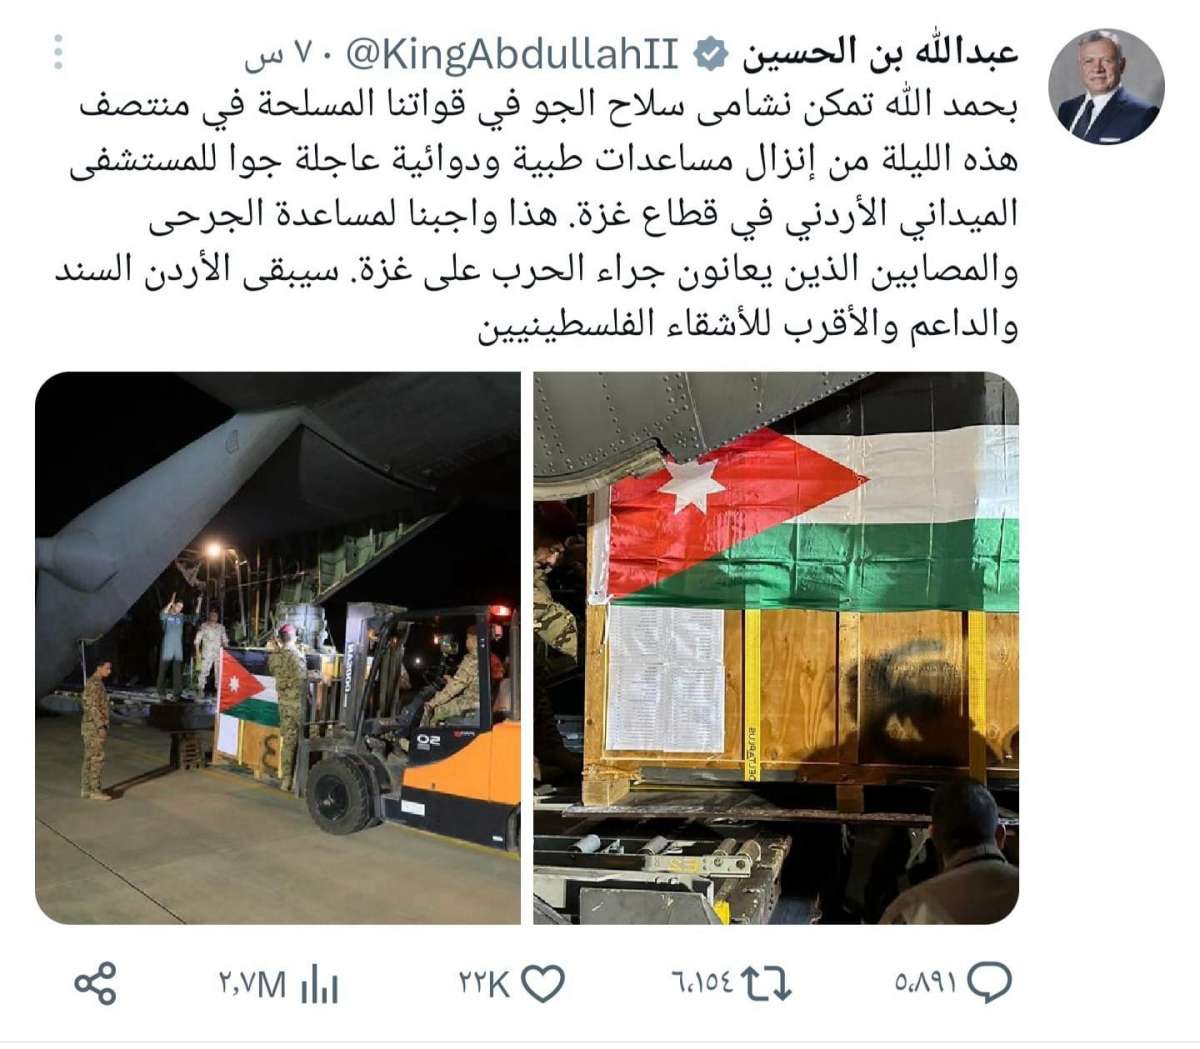 بيان صادر عن حزب الإتحاد الوطني الأردني: نعتز بمواقف جلالة الملك ودعمه في إرسال المساعدات الطبية إلى غزة.